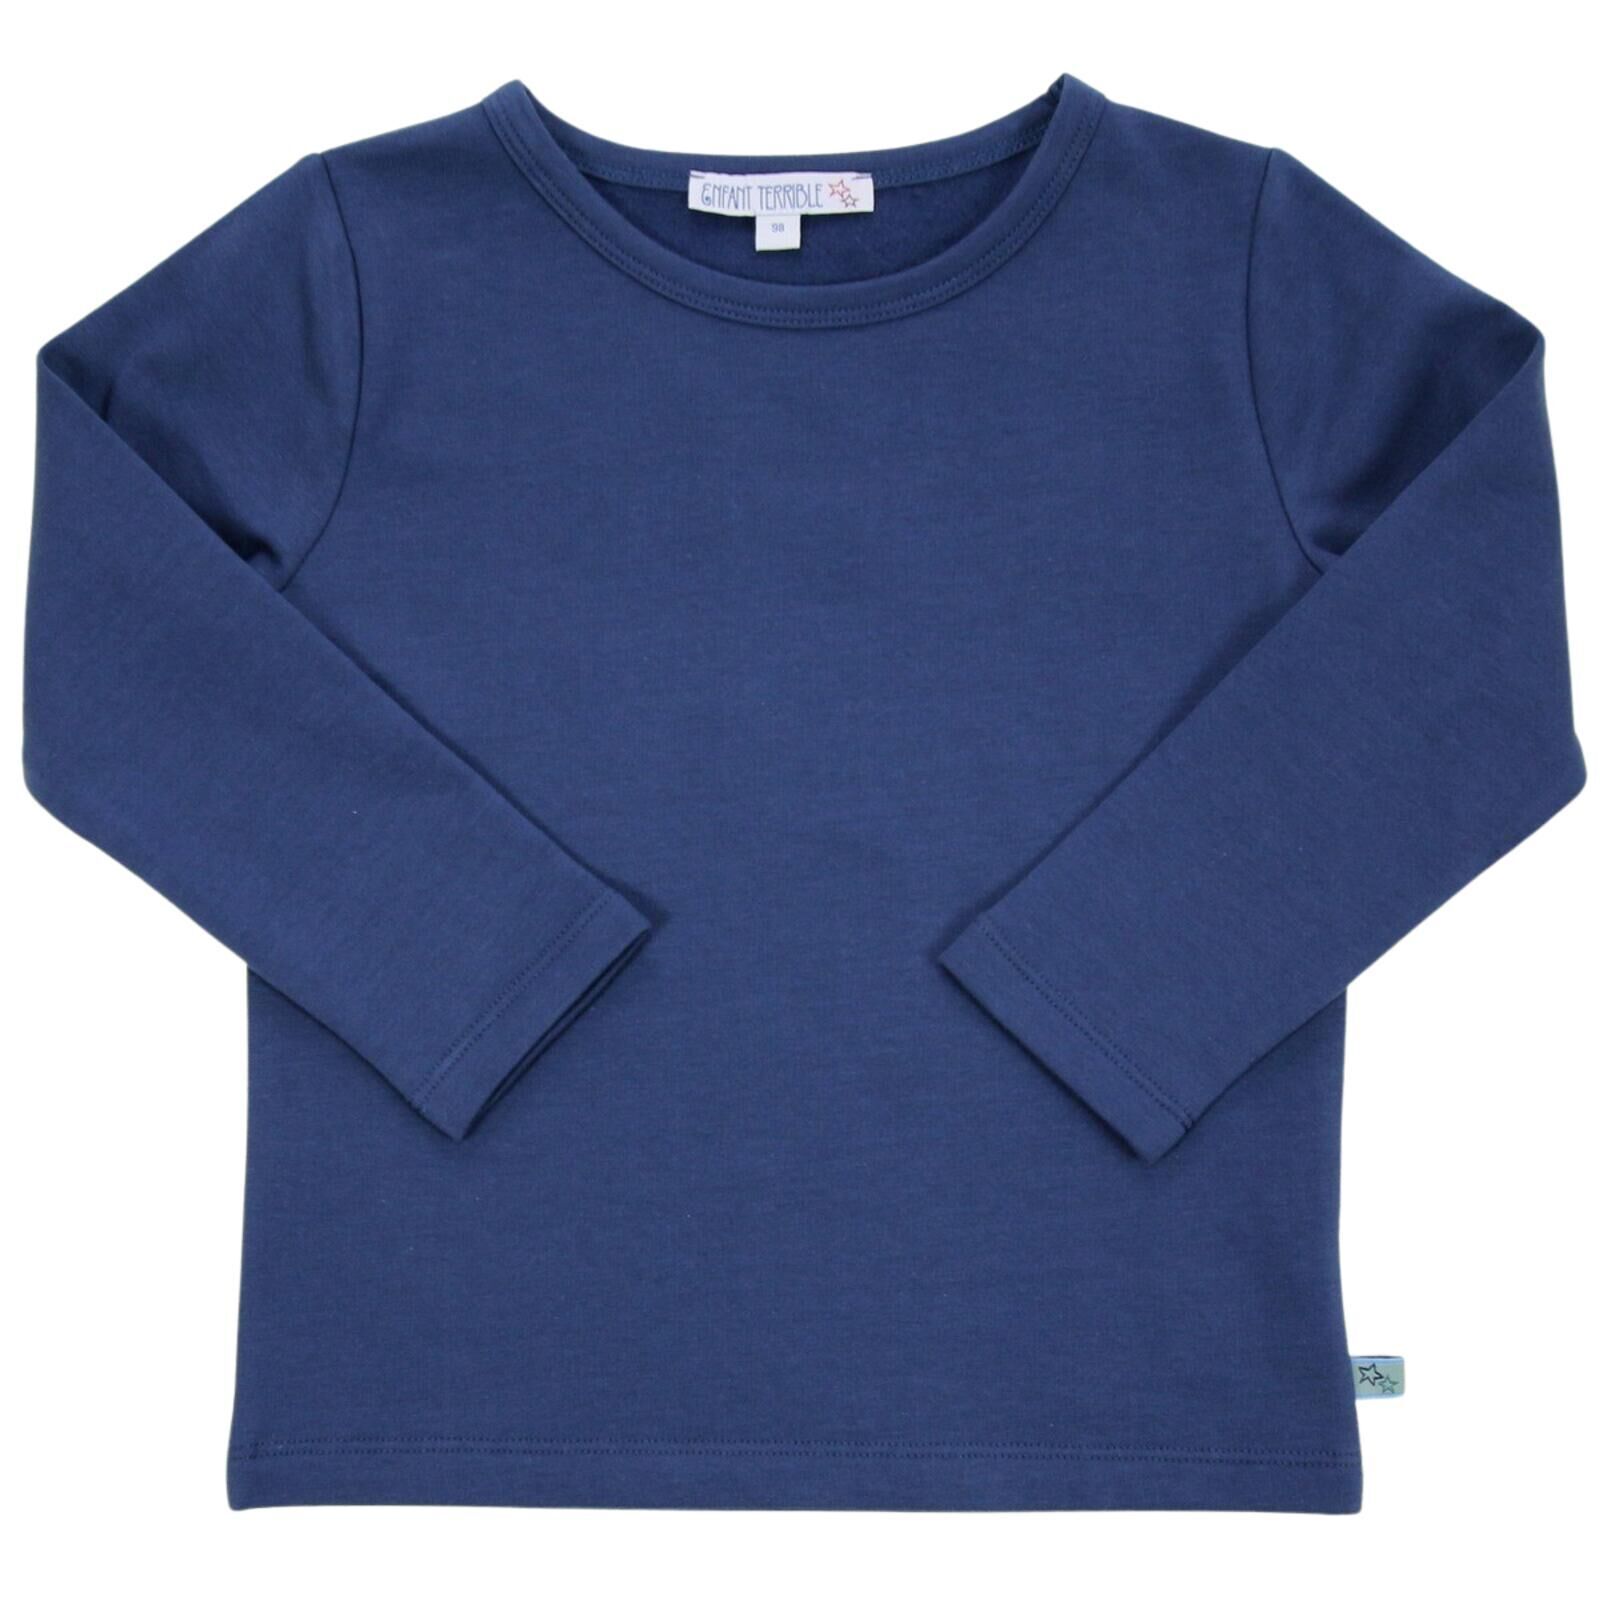 Thermo-Shirt in dark blue von ENFANT TERRIBLE